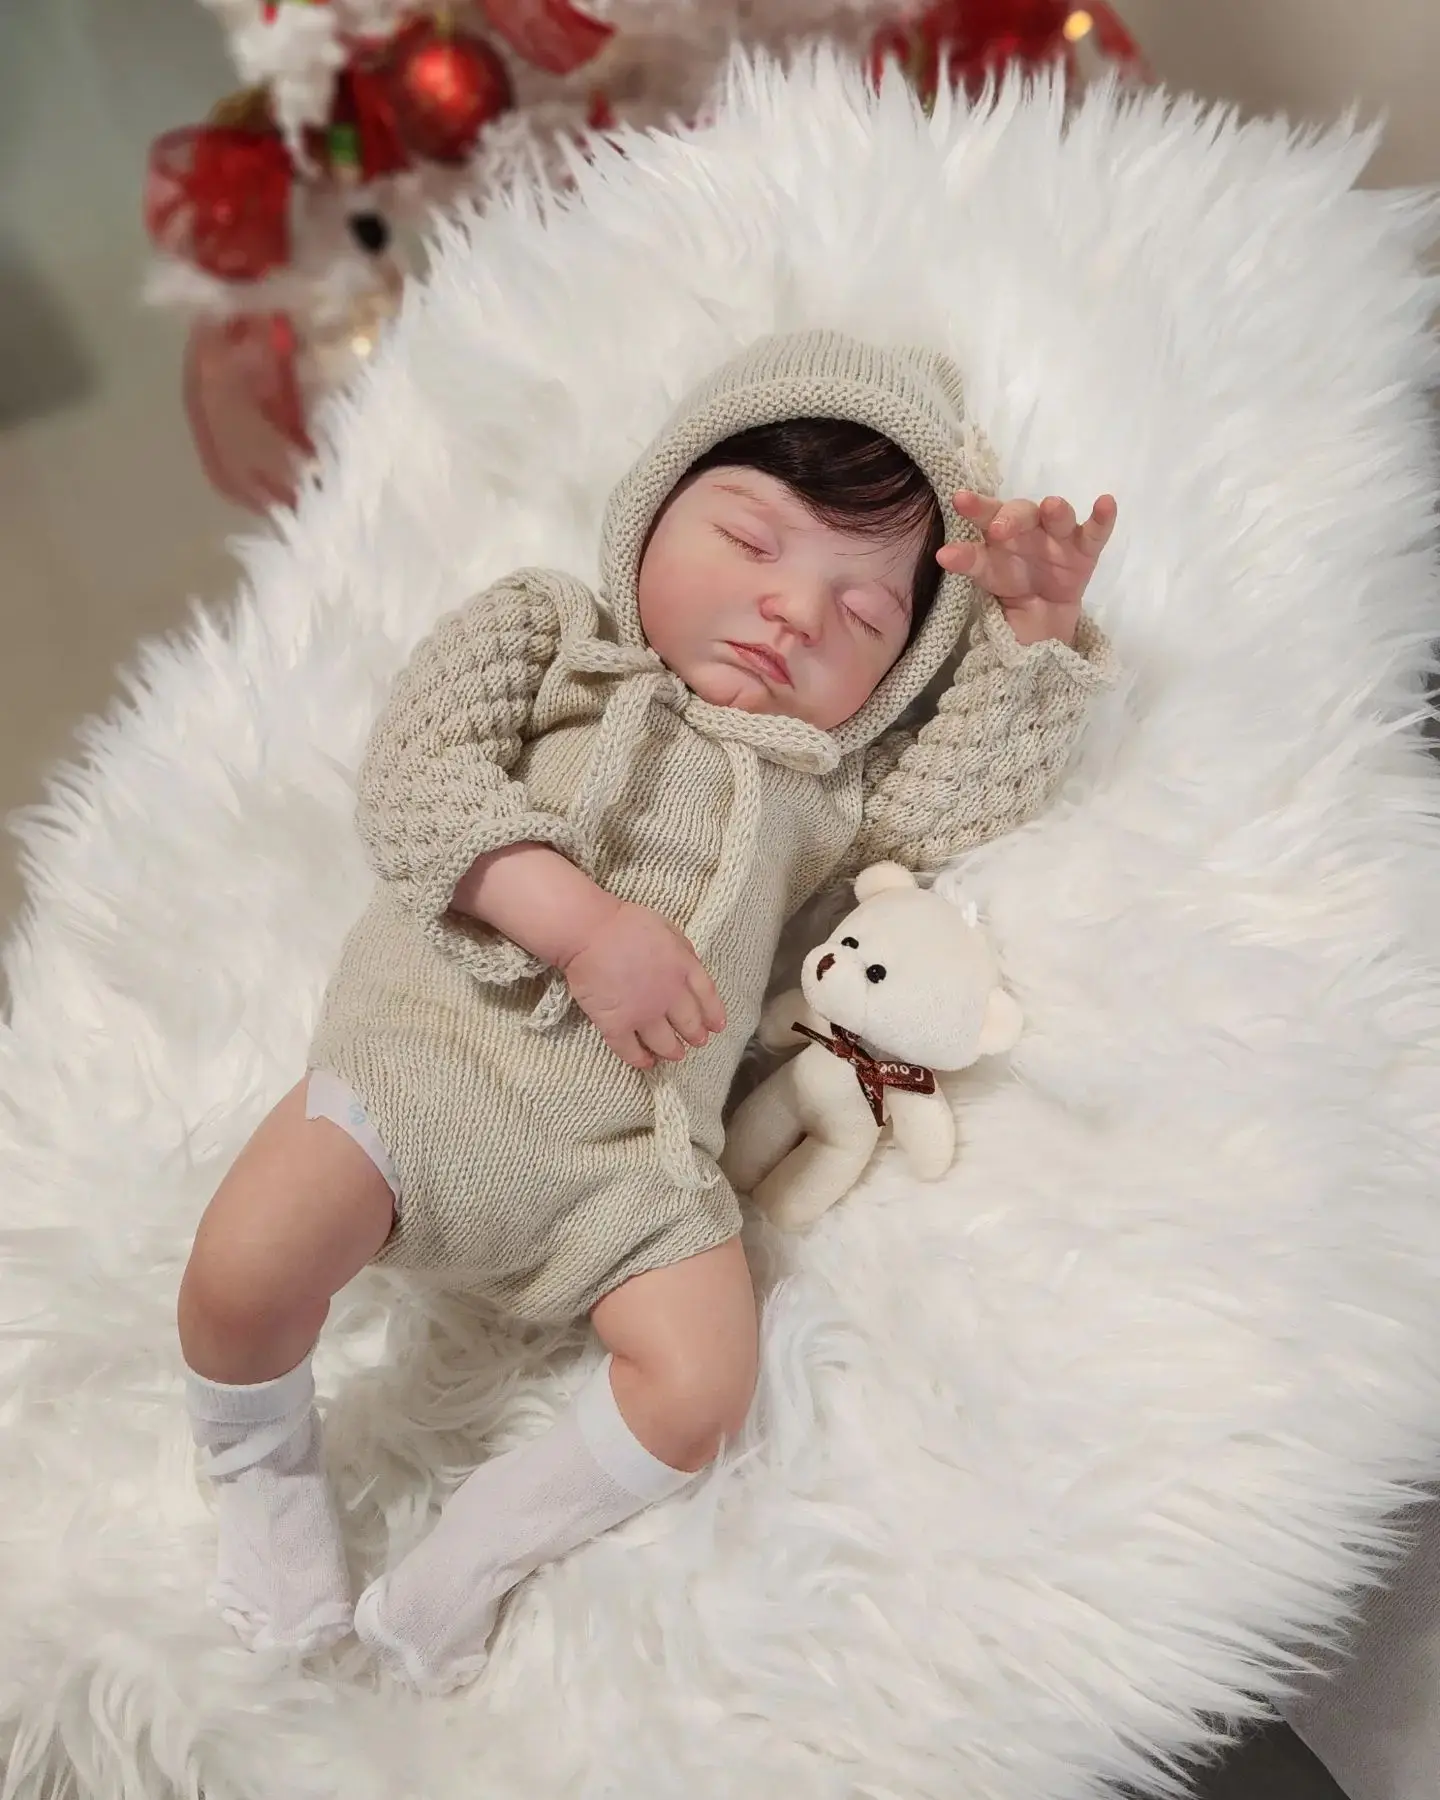 50 см Уже окрашенная Готовая кукла Bebe Reborn, настоящая, живая, спящая, размер новорожденного, реалистичная, мягкая на ощупь 3D-кукла для рисования кожи